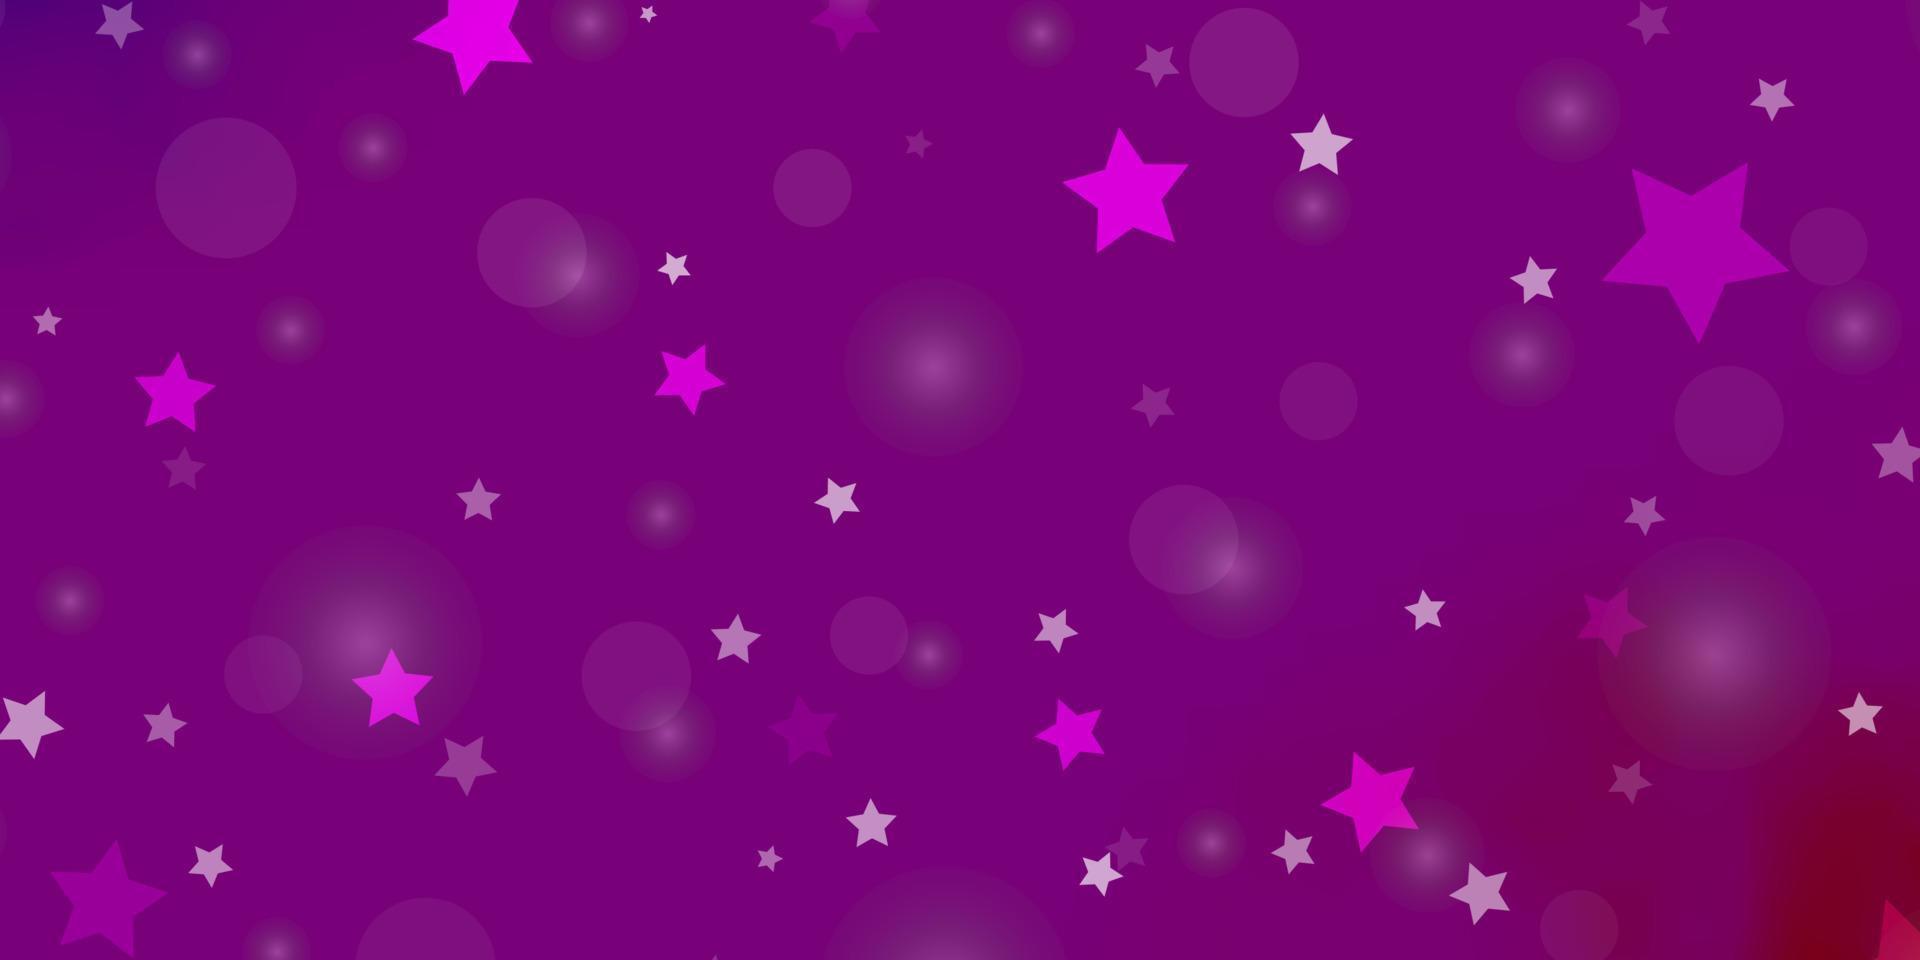 modello vettoriale viola chiaro, rosa con cerchi, stelle.